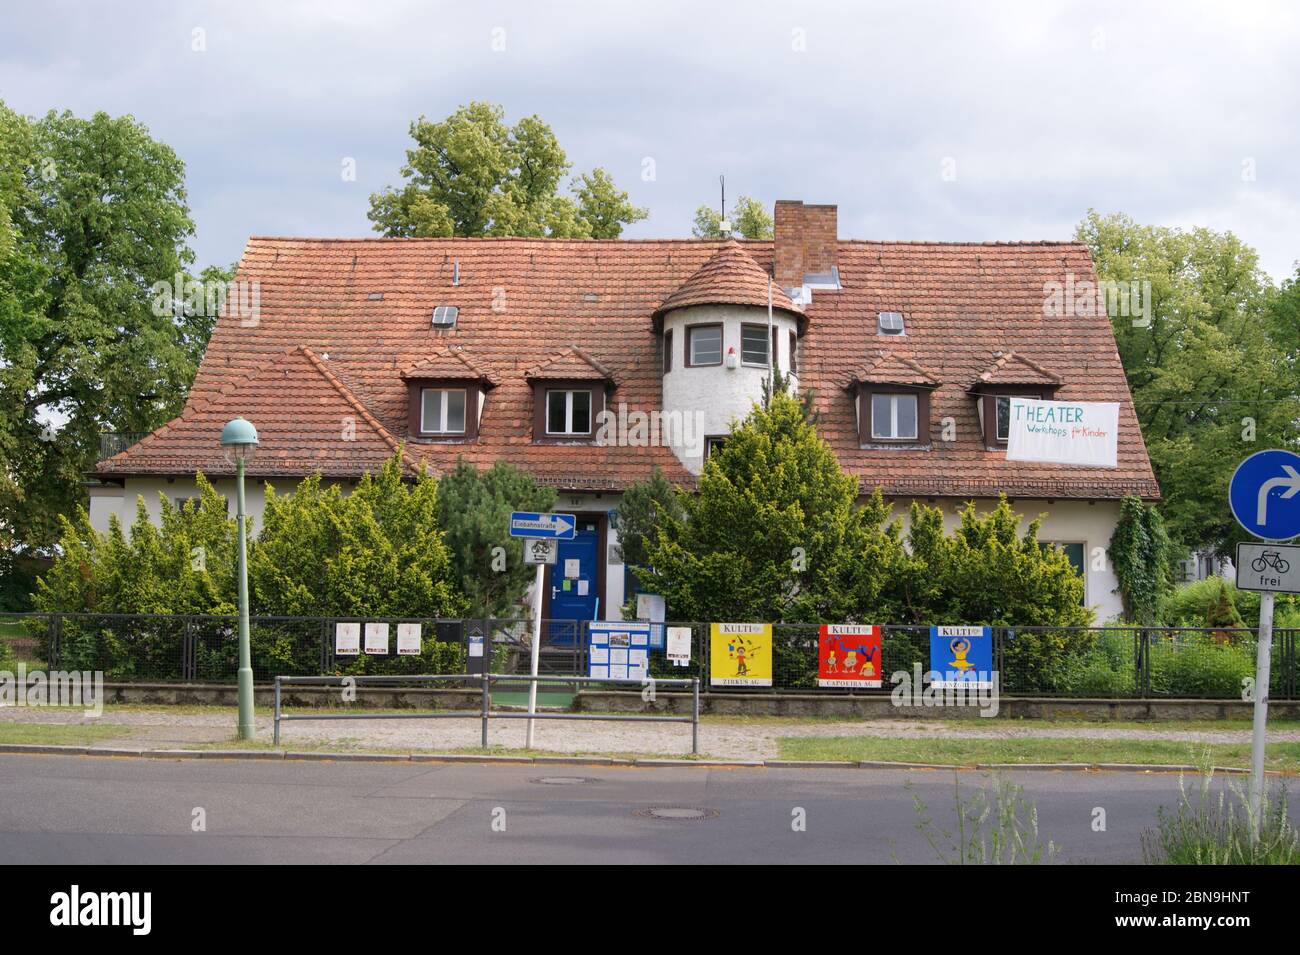 Früherer Wohnsitz von Erich Honecker am Majakowskiring in Berlin-Pankow, Stock Photo